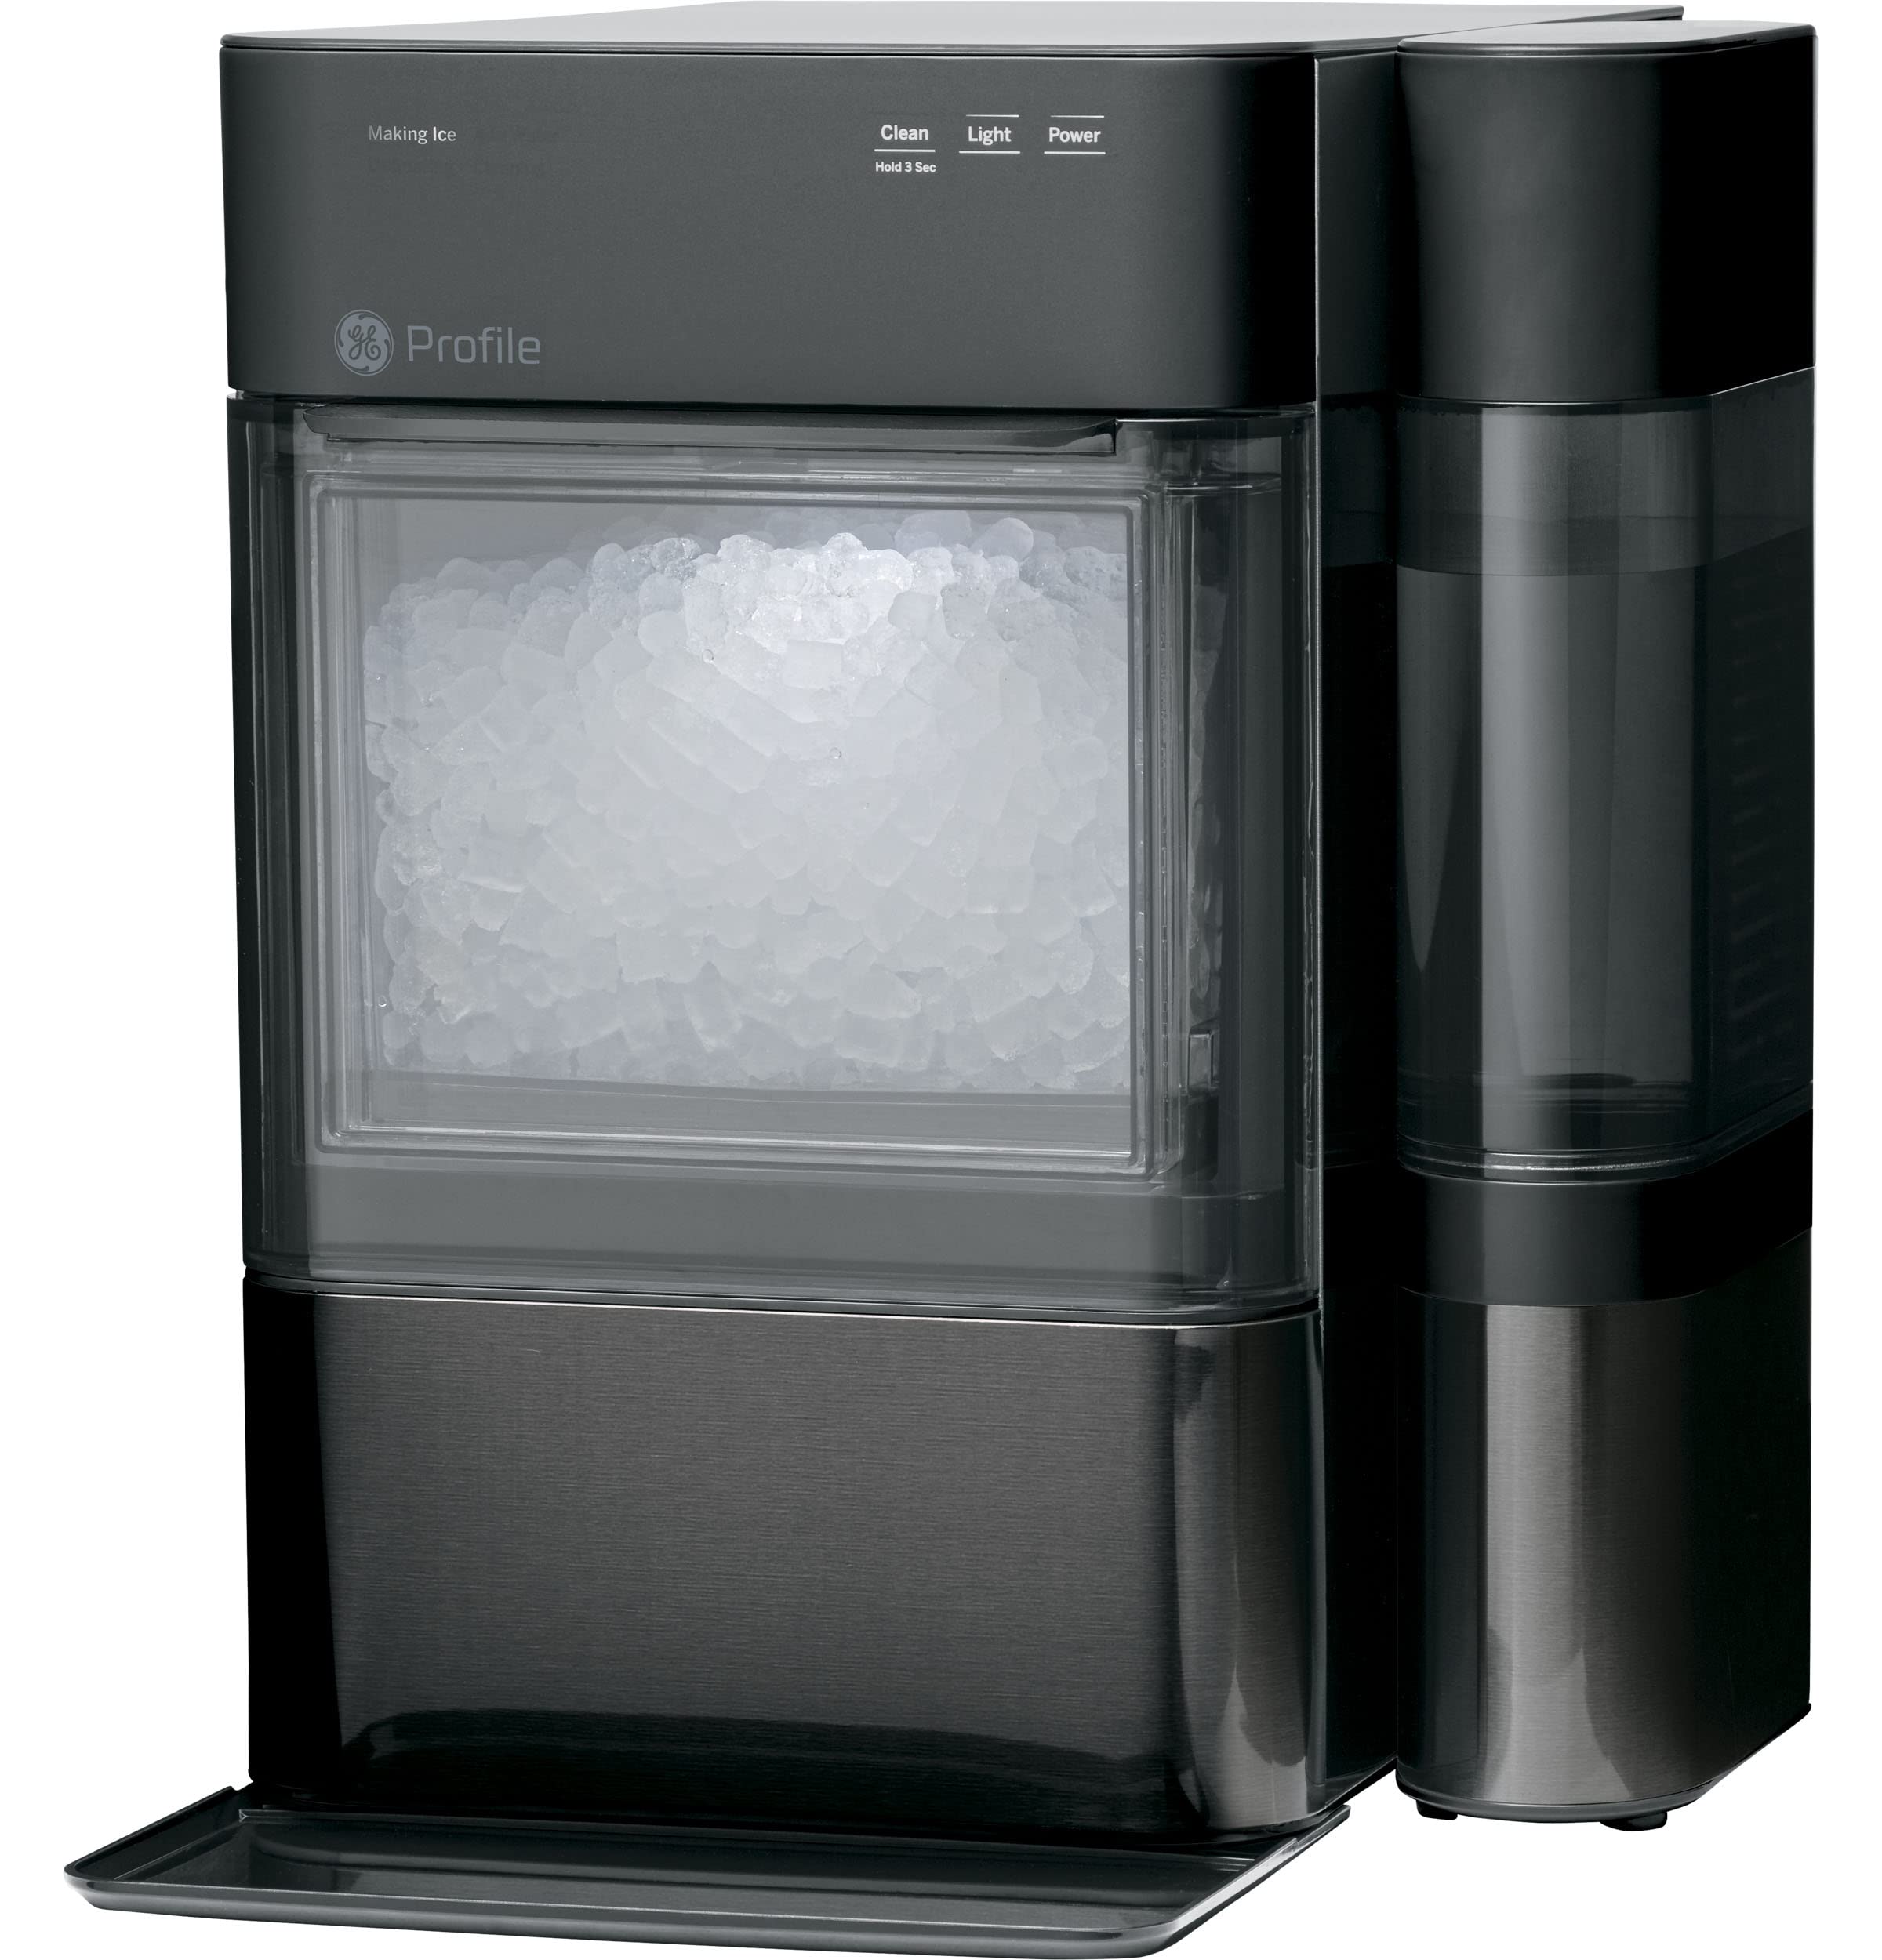 GE 简介蛋白石2.0 |带侧罐的台面 Nugt 制冰机 |带 WiFi 连接的制冰机 |智能家居厨房必备品 |黑色不锈钢